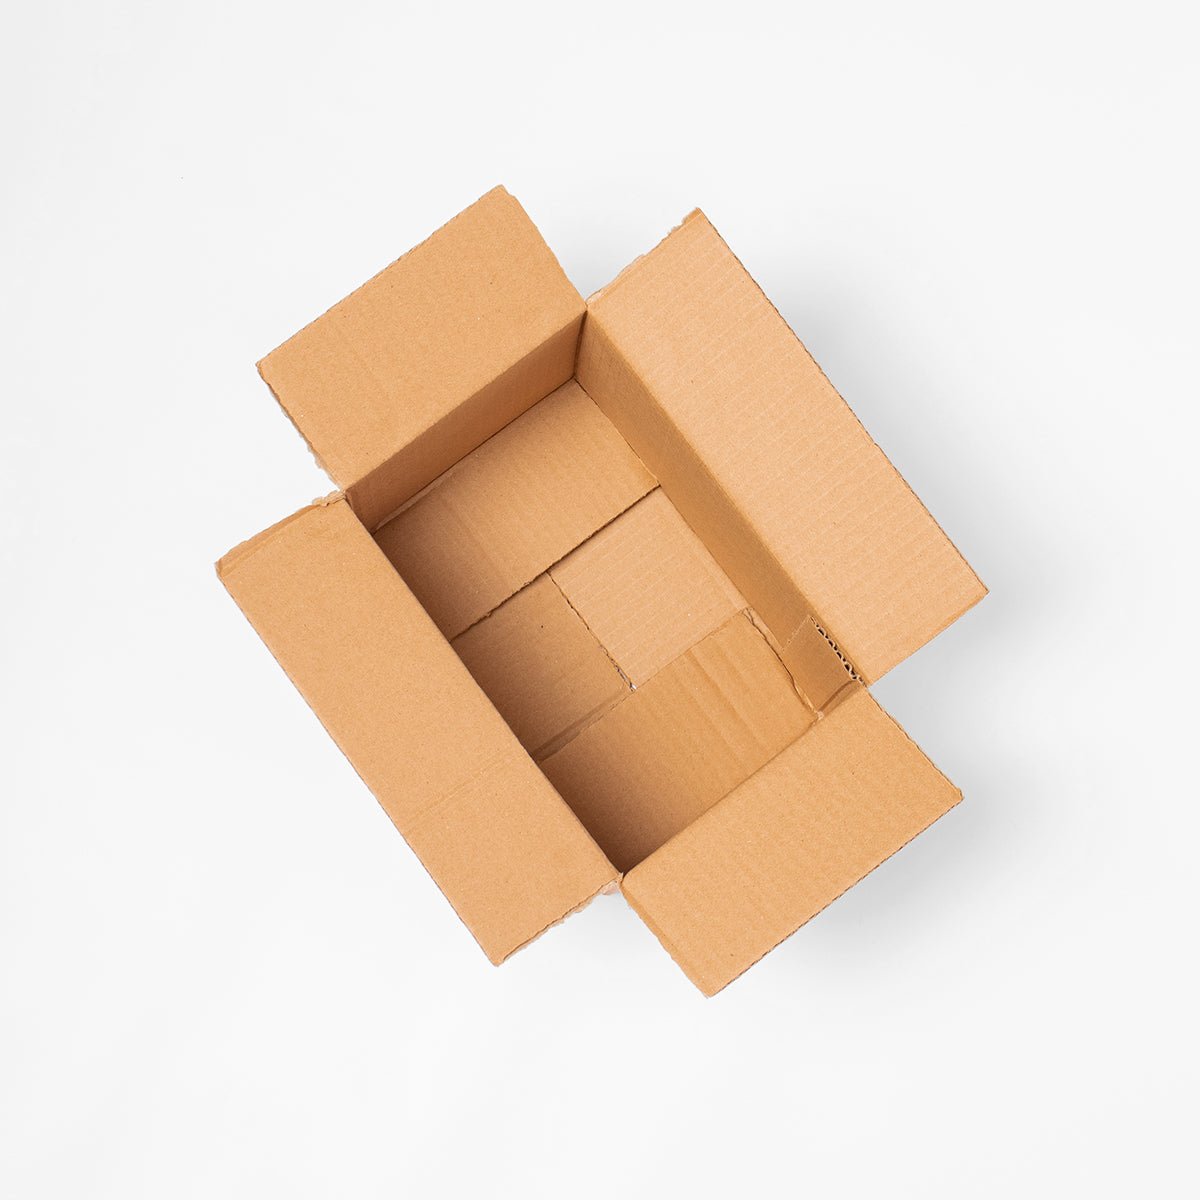  BOX USA Paquete de 25 cajas de cartón corrugado, 16